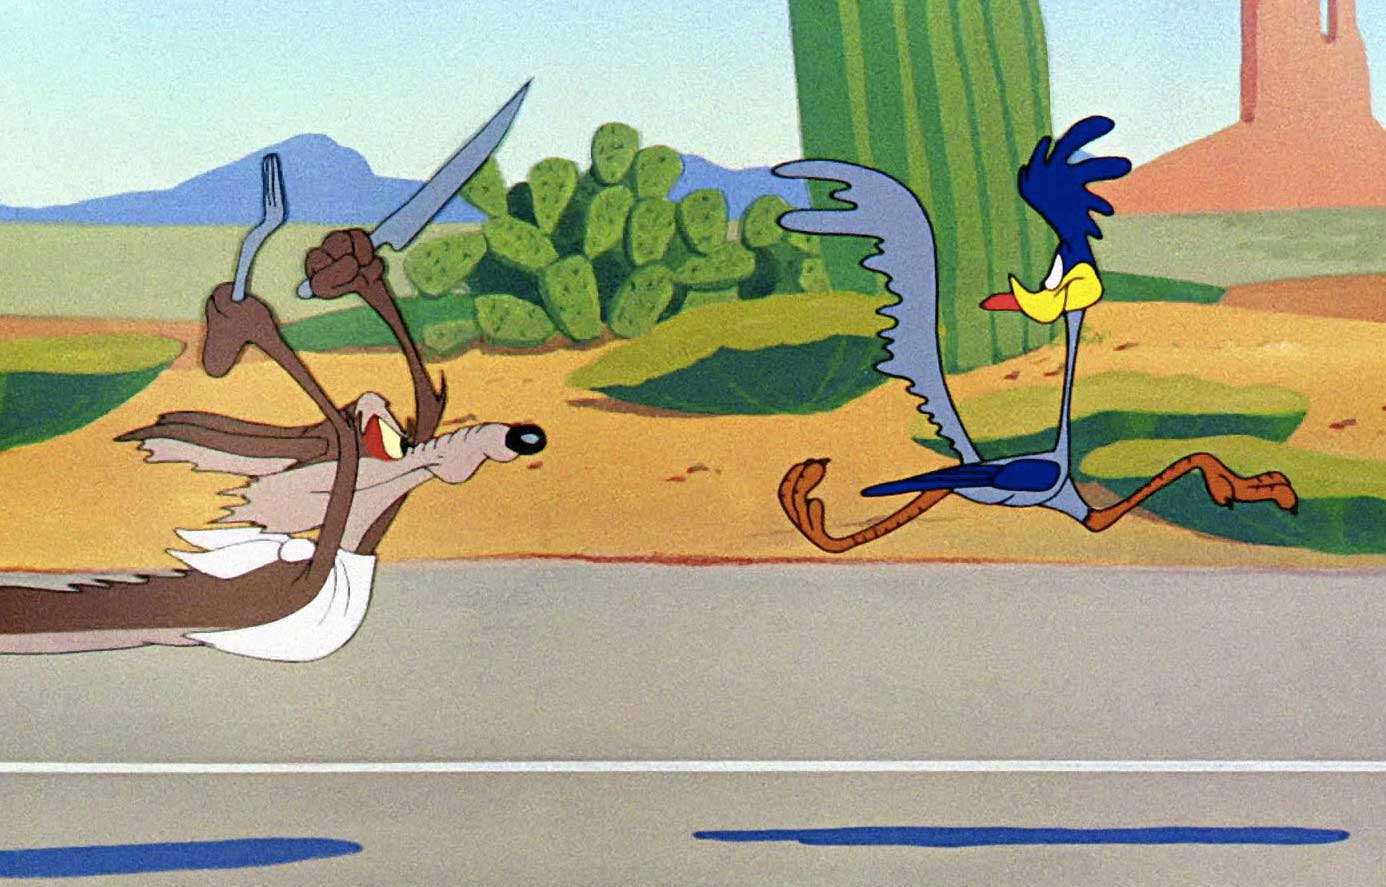 Coyote chasing roadrunner - warner bros. cartoon